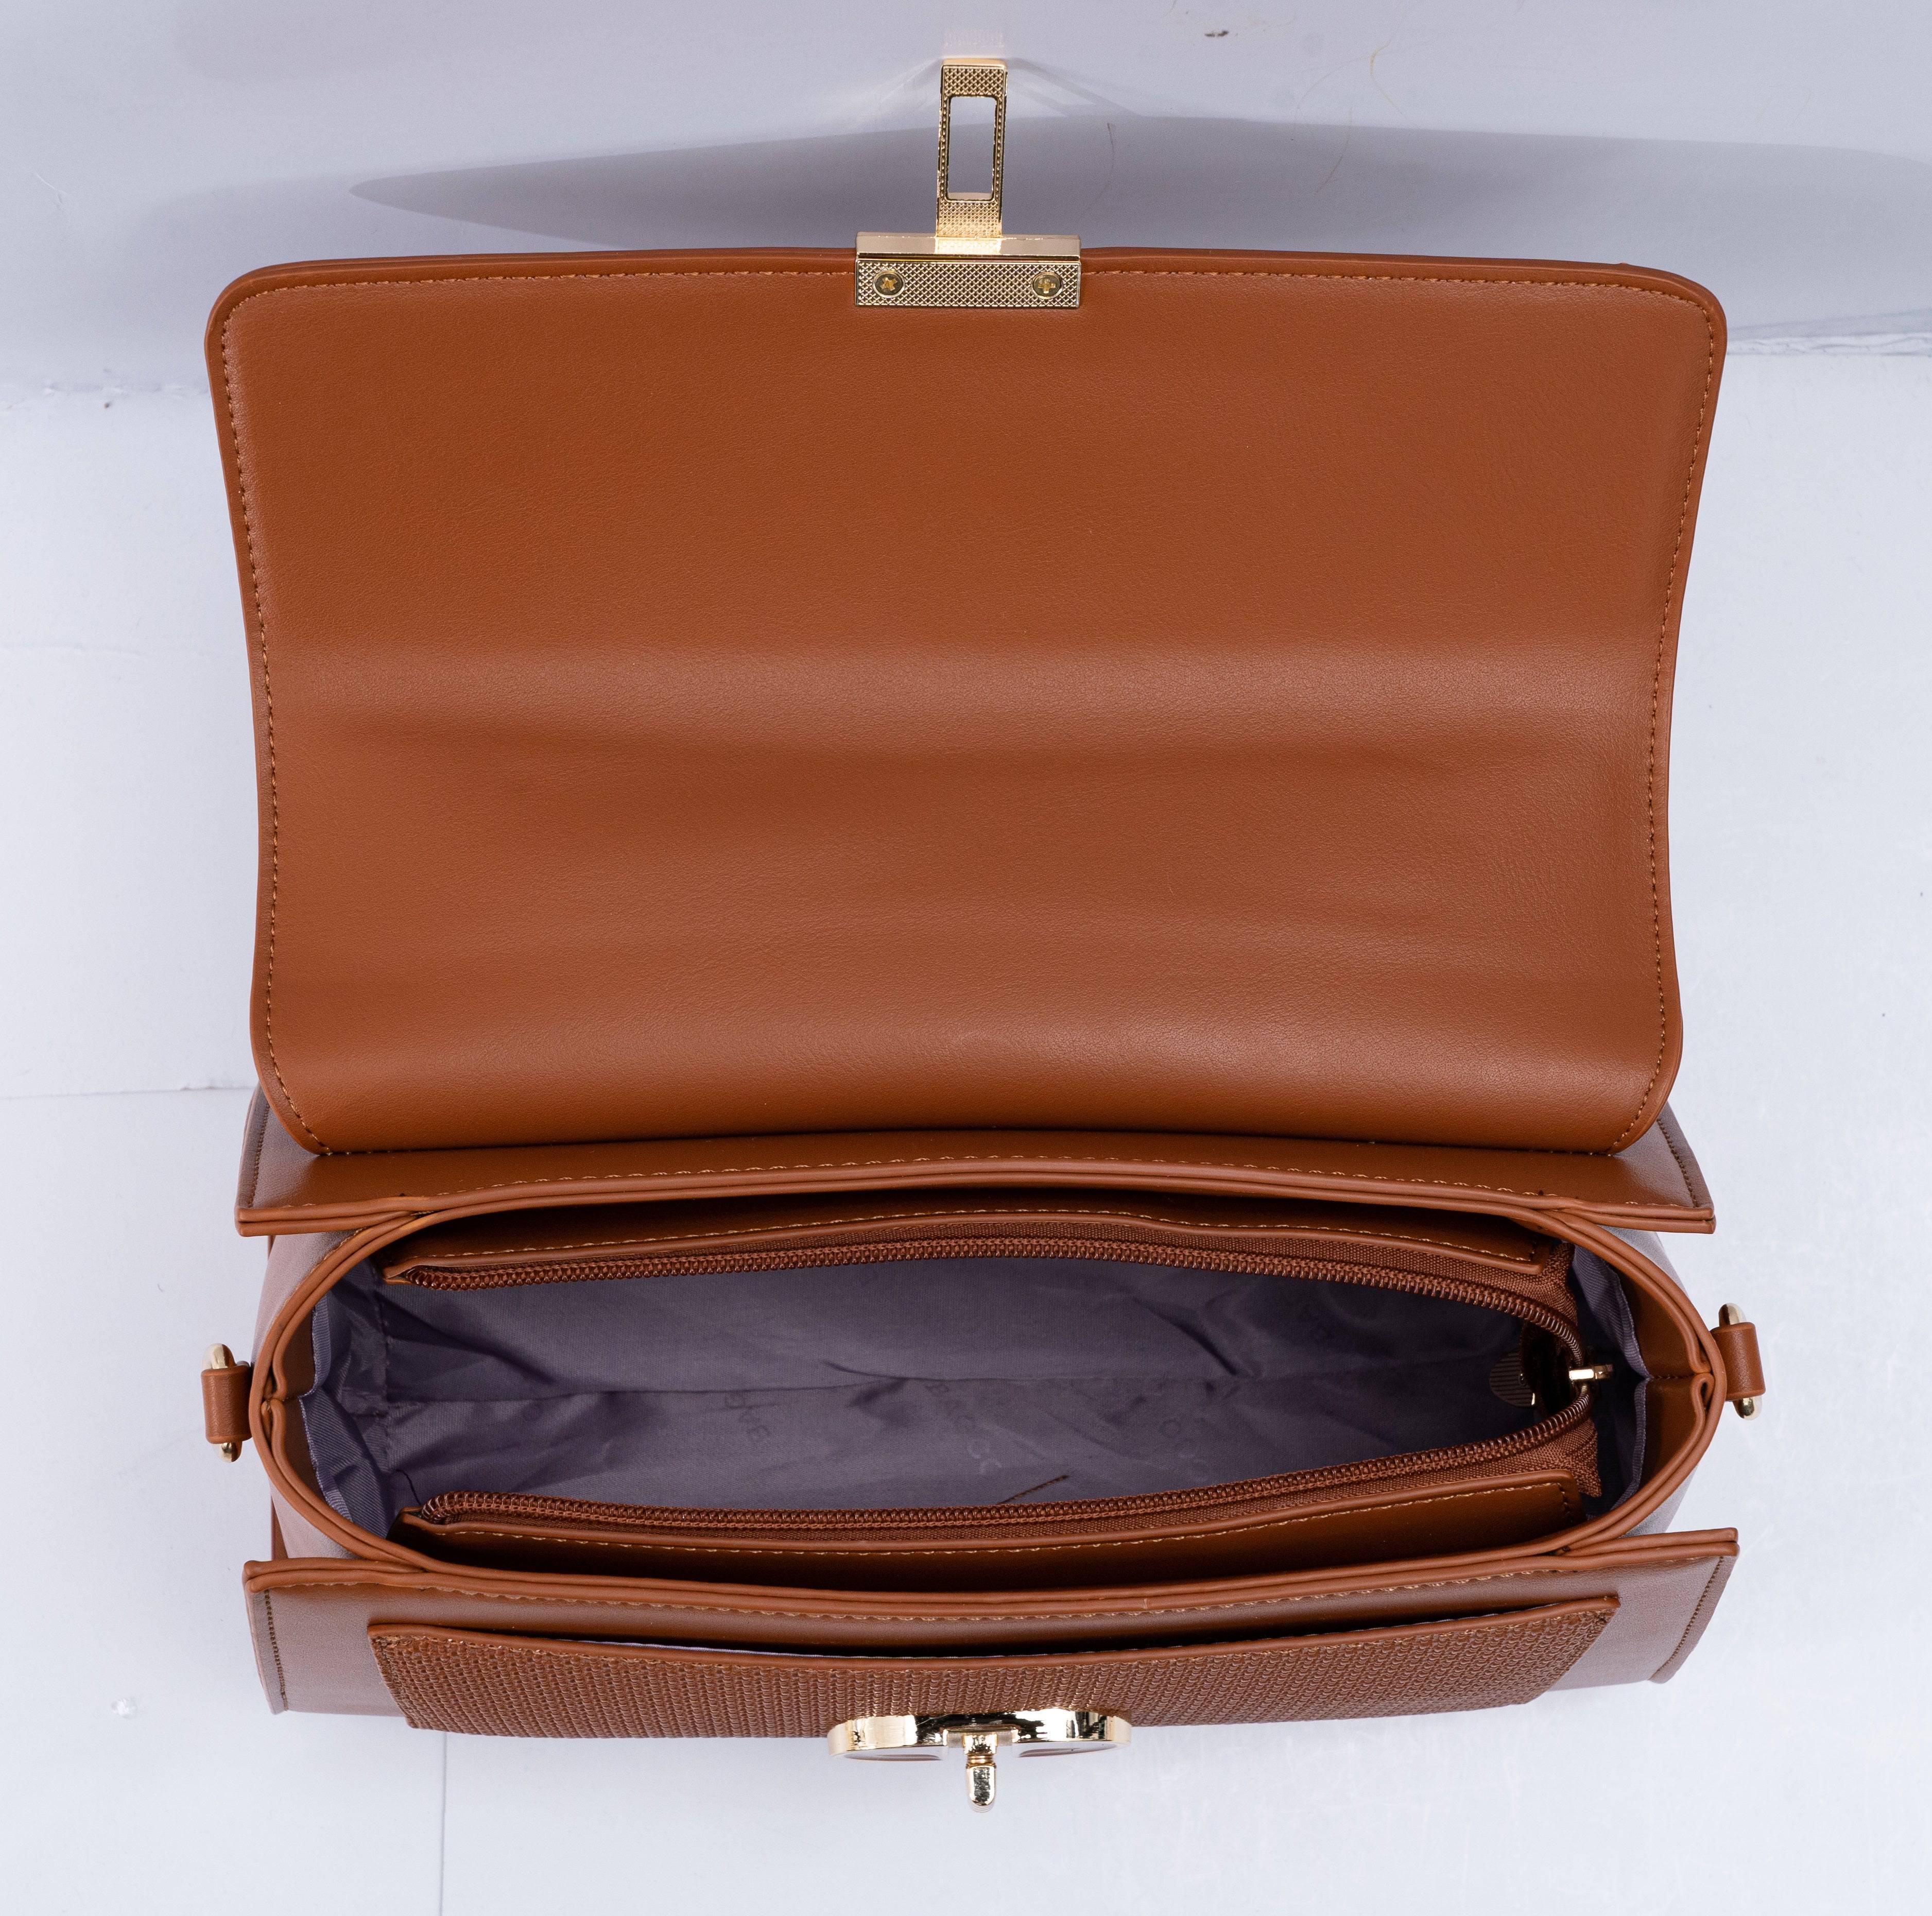 حقيبة يد نسائية باللون الاسود بشكل أنيق يمكن حملها باليد ومن خلال حزام طويل للكتف. - KSA